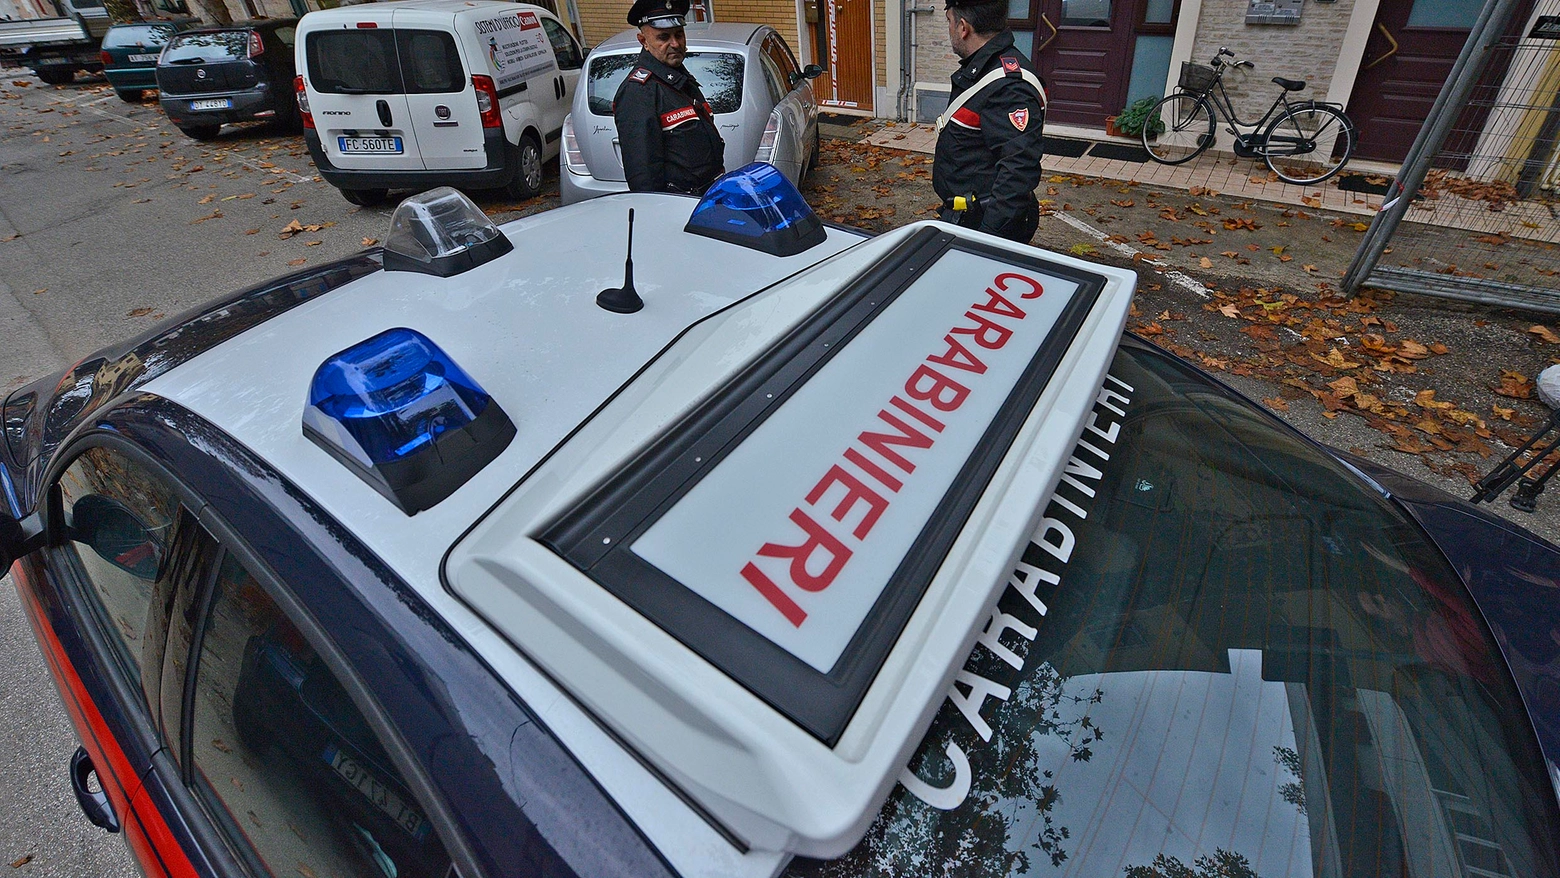 Sono intervenuti i Carabinieri (immagini d'archivio)